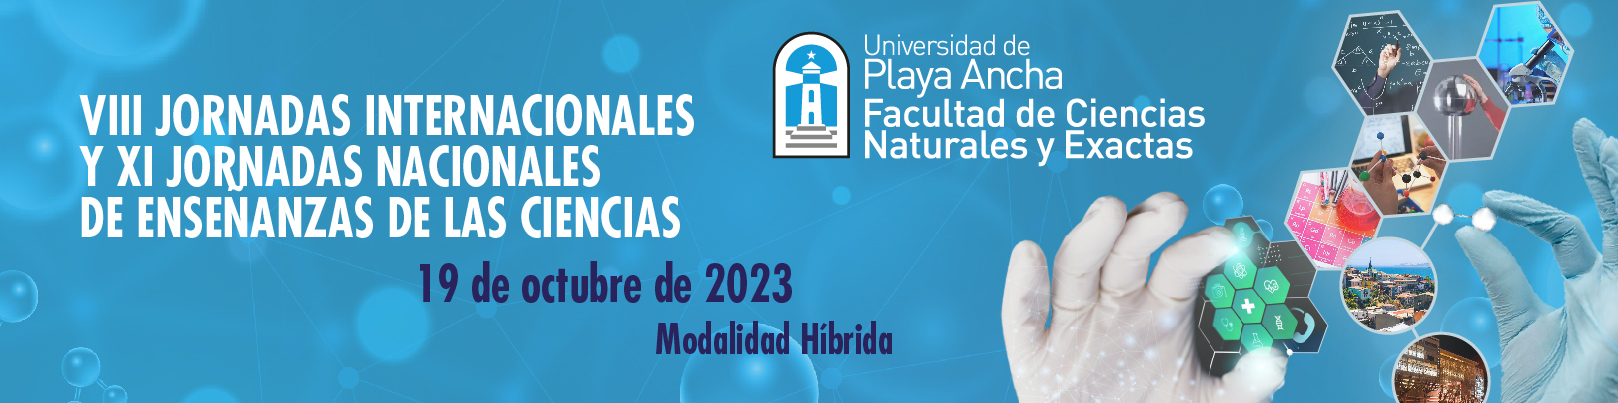 Universidad de Playa Ancha - Jornada de Enseñanza de las Ciencias